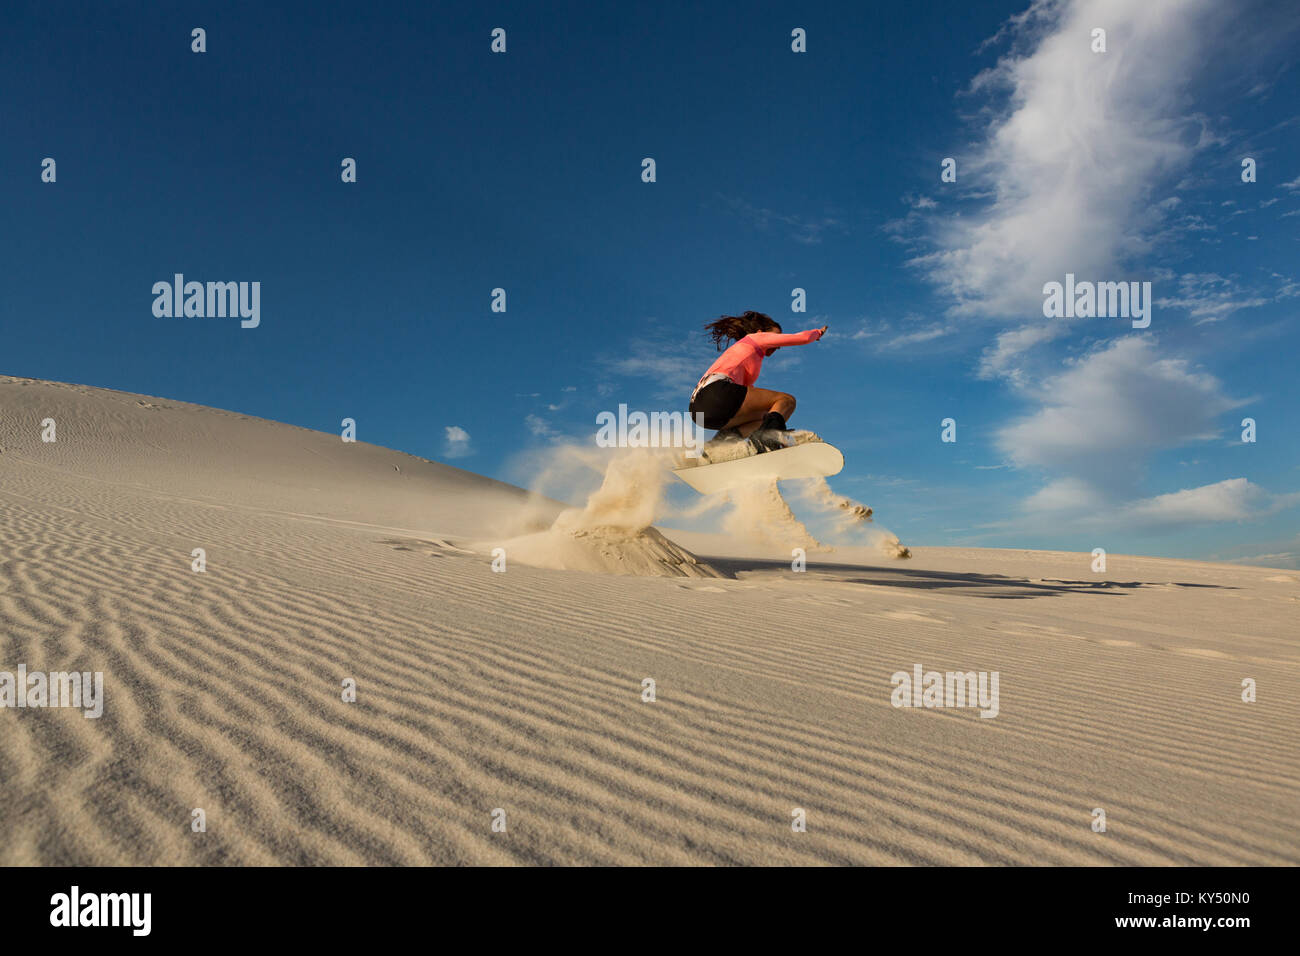 Woman sandboarding on sand dune Stock Photo